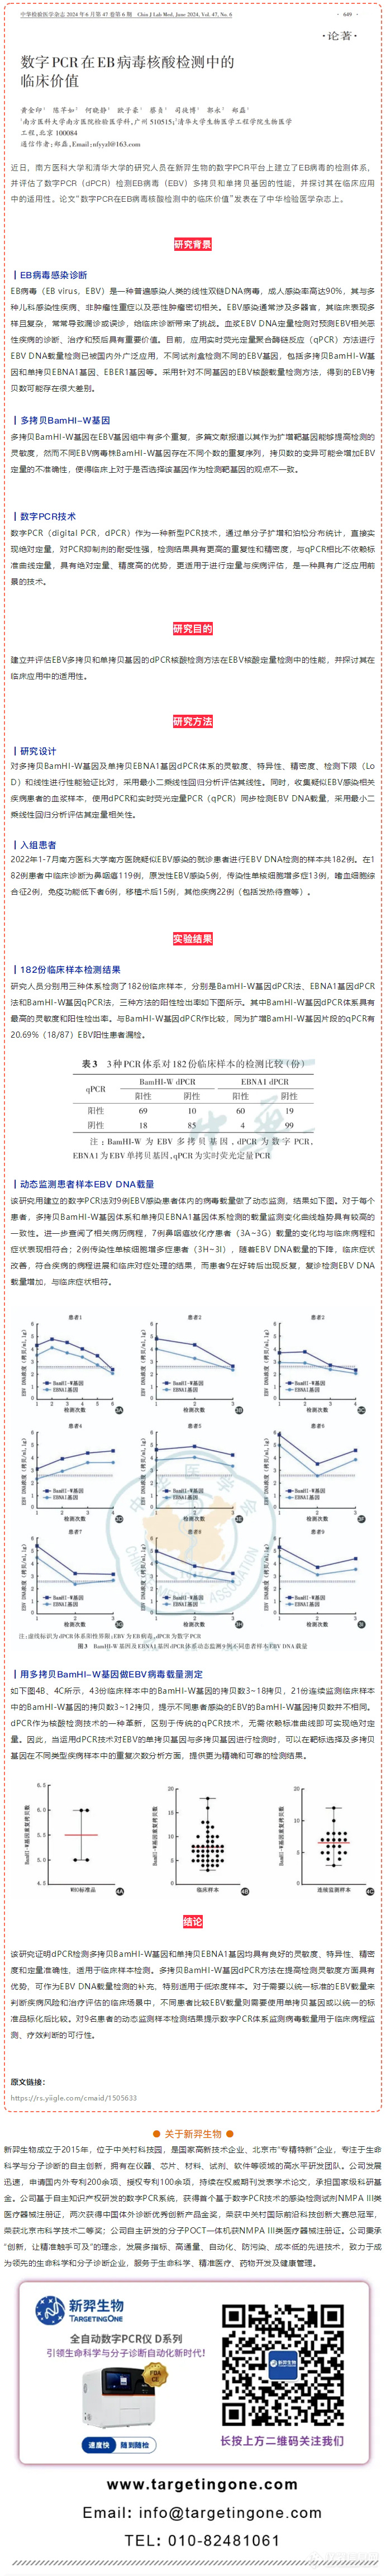 学术文章丨数字PCR在EB病毒核酸检测中的临床价值_看图王.png